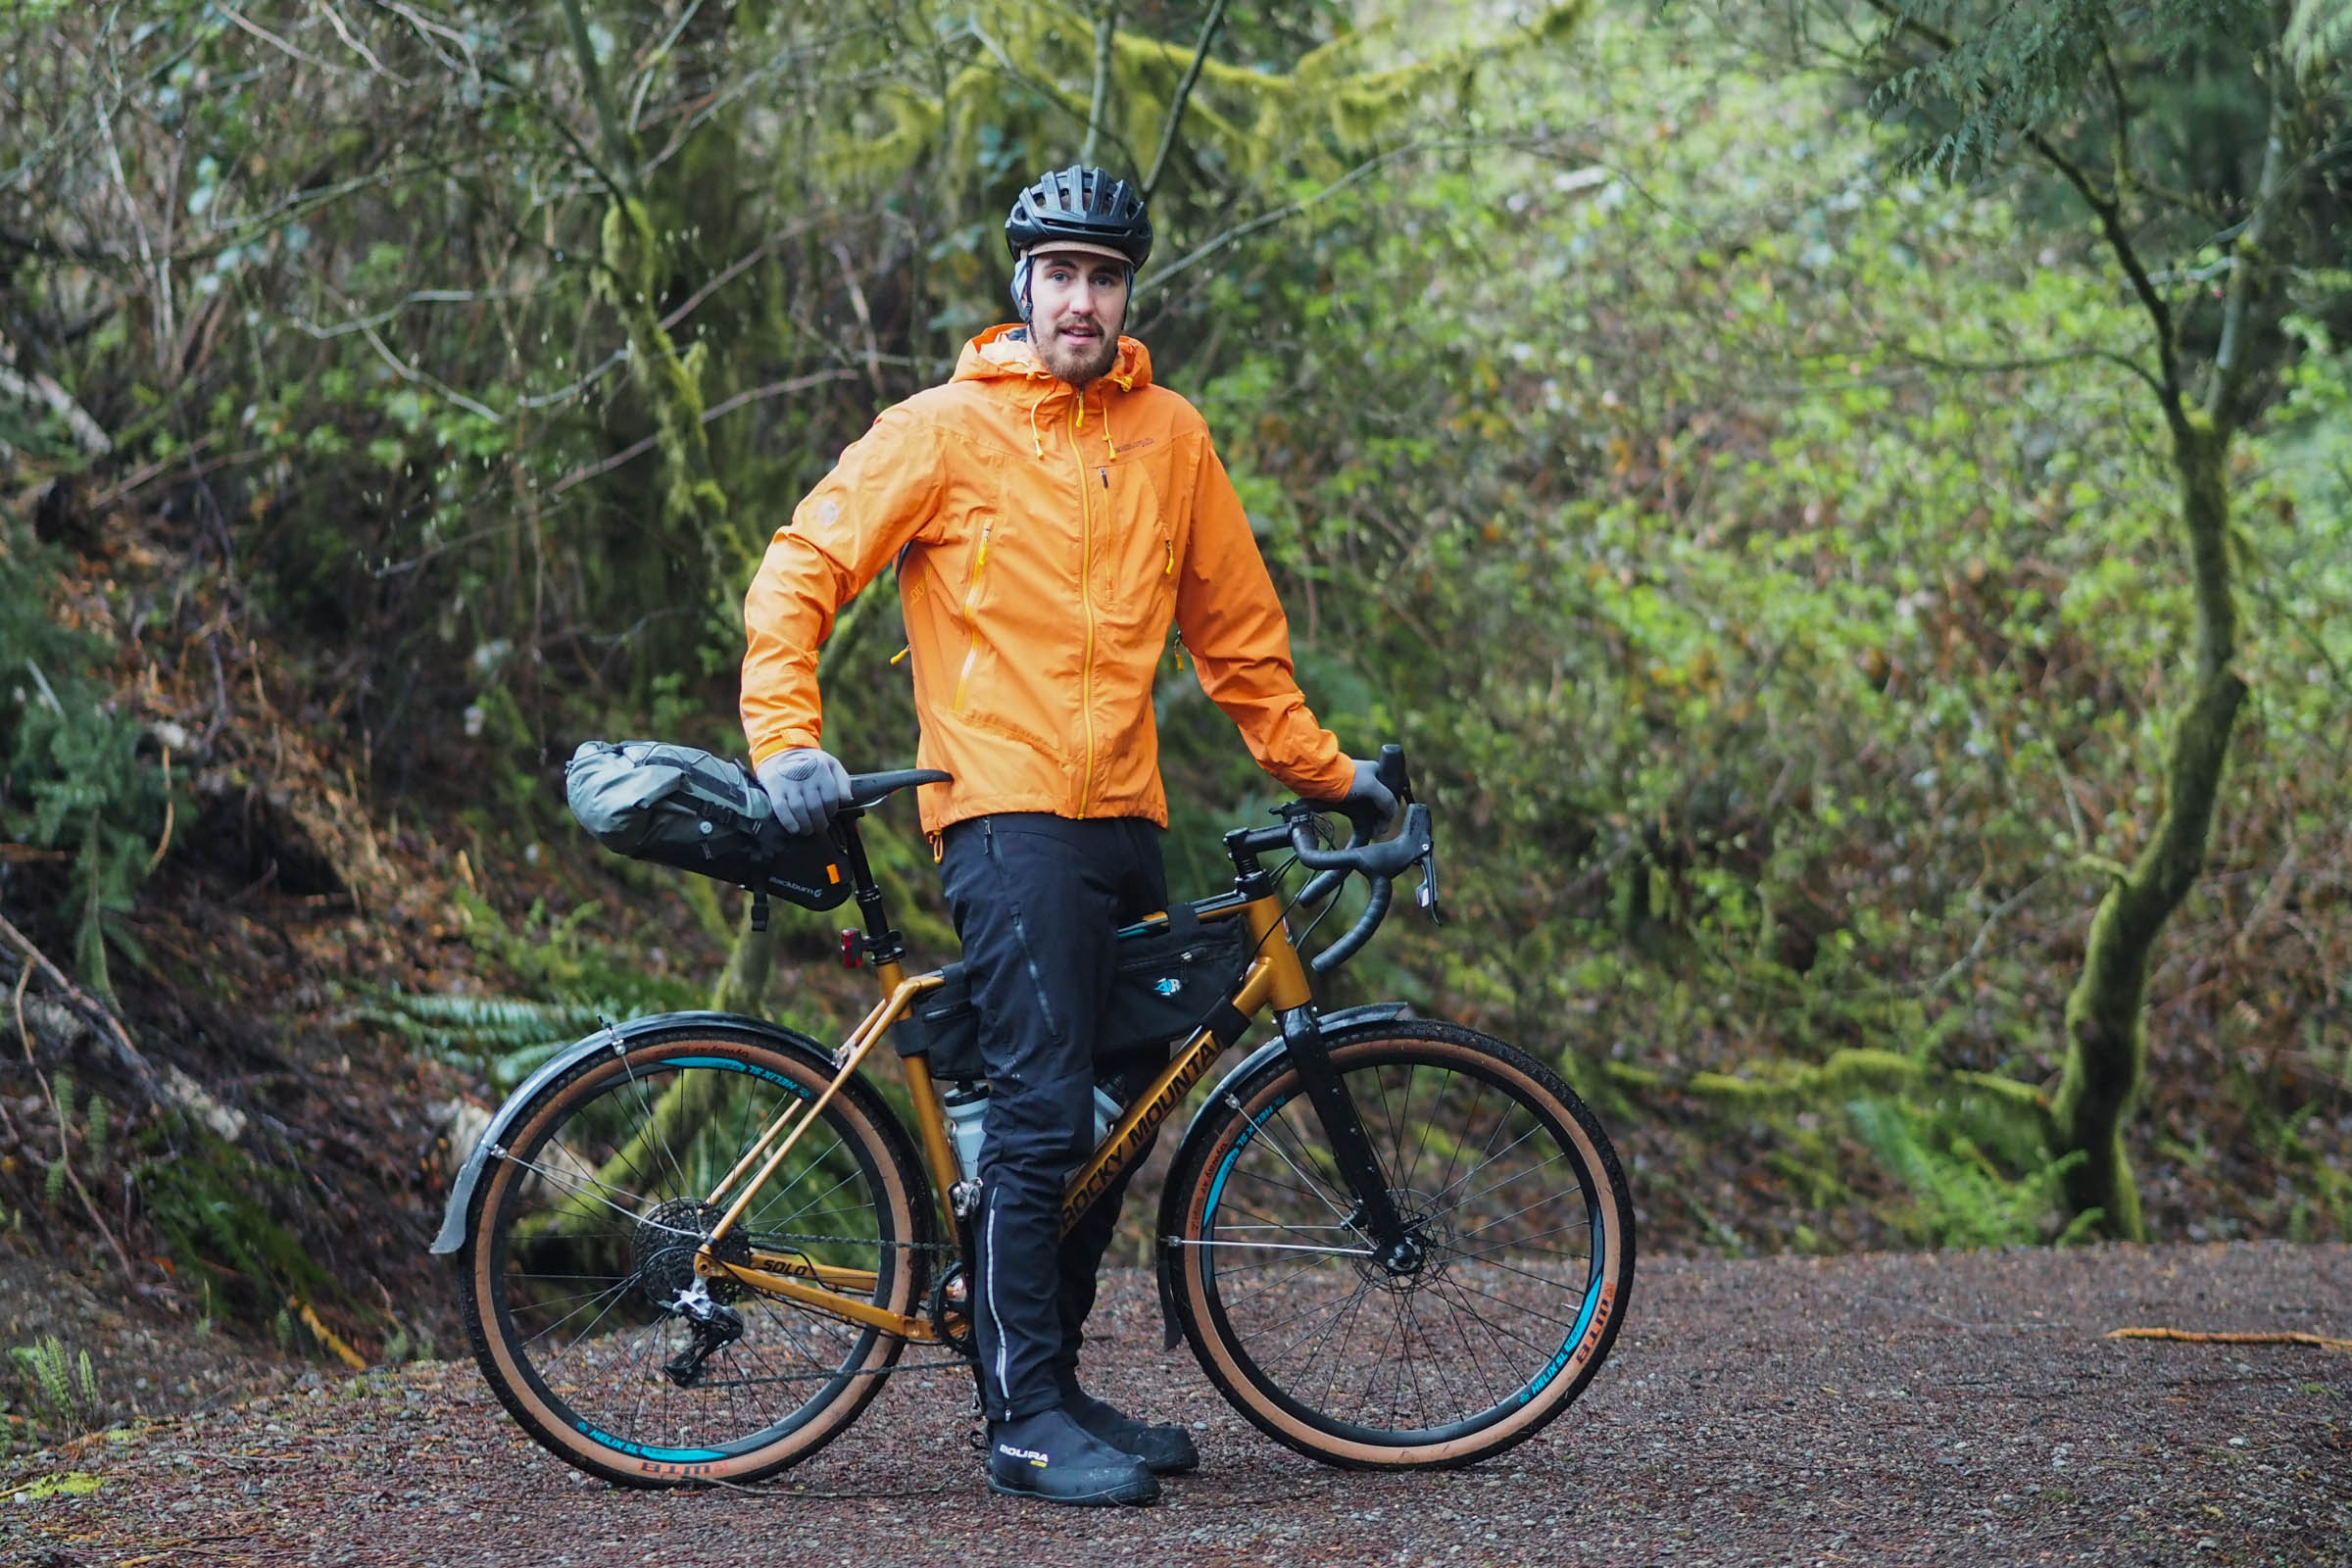 Review: Endura MT500 Waterproof Jacket and Shorts